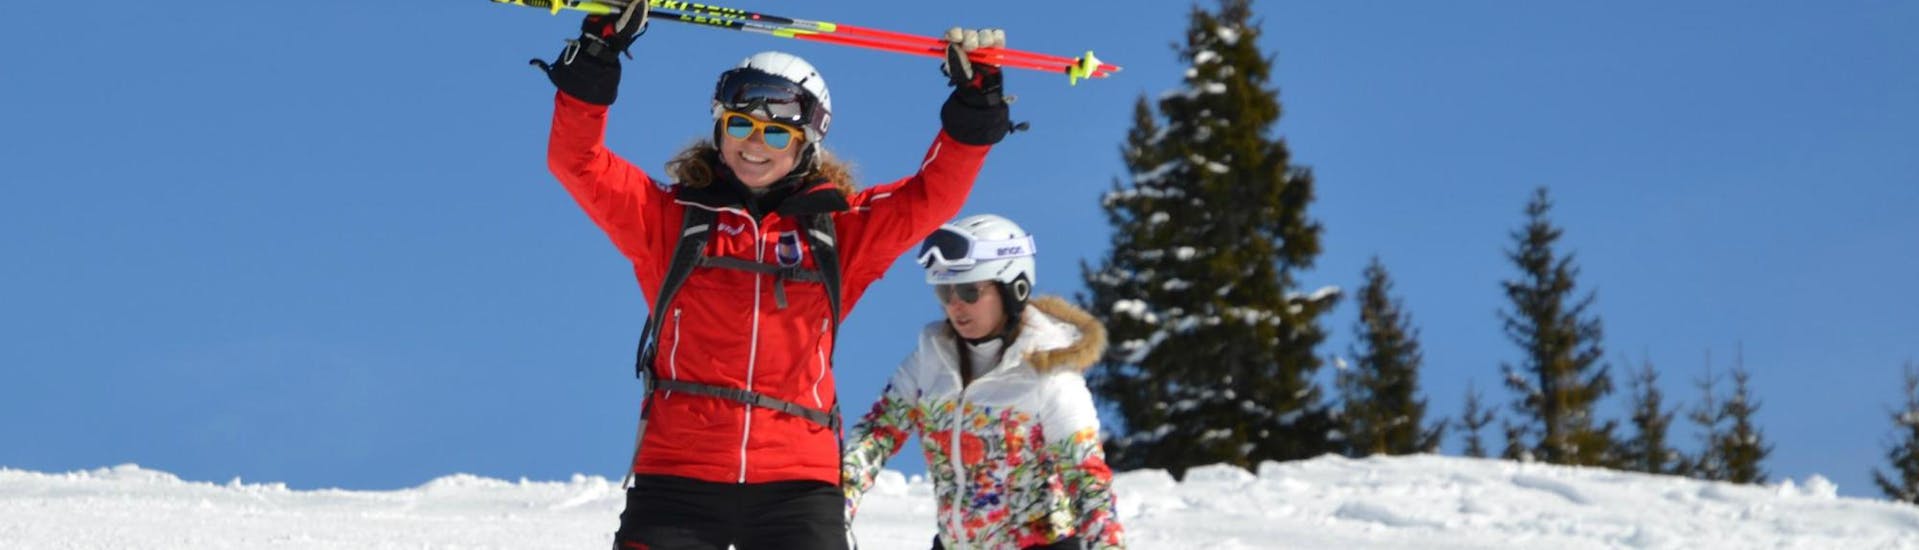 Clases de esquí para adultos para debutantes con Skischule Kitzbühel Rote Teufel.